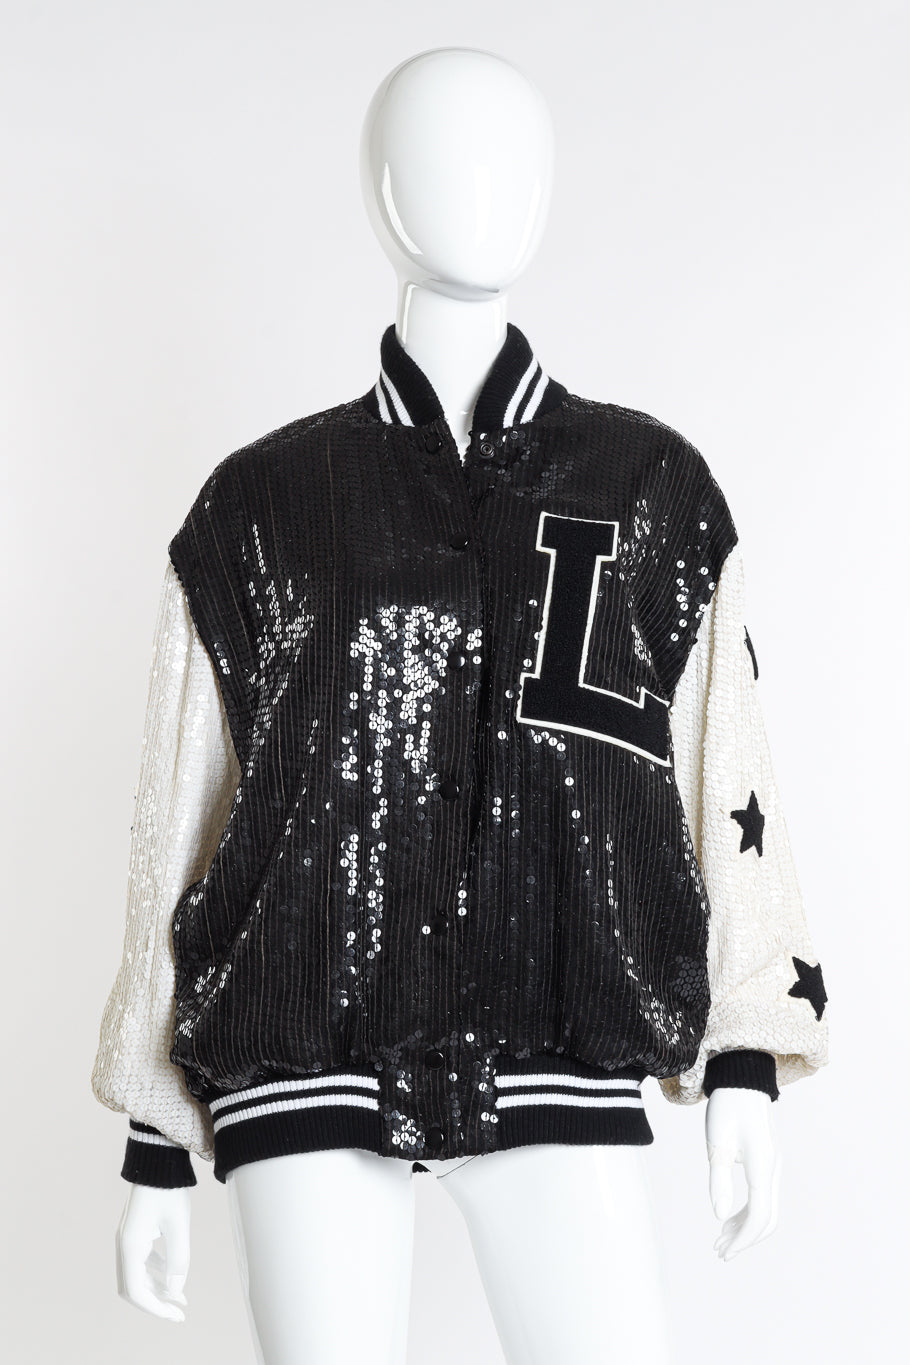 Vintage Jeanette for St. Martin Sequined Letterman Bomber Jacket front on mannequin @recessla